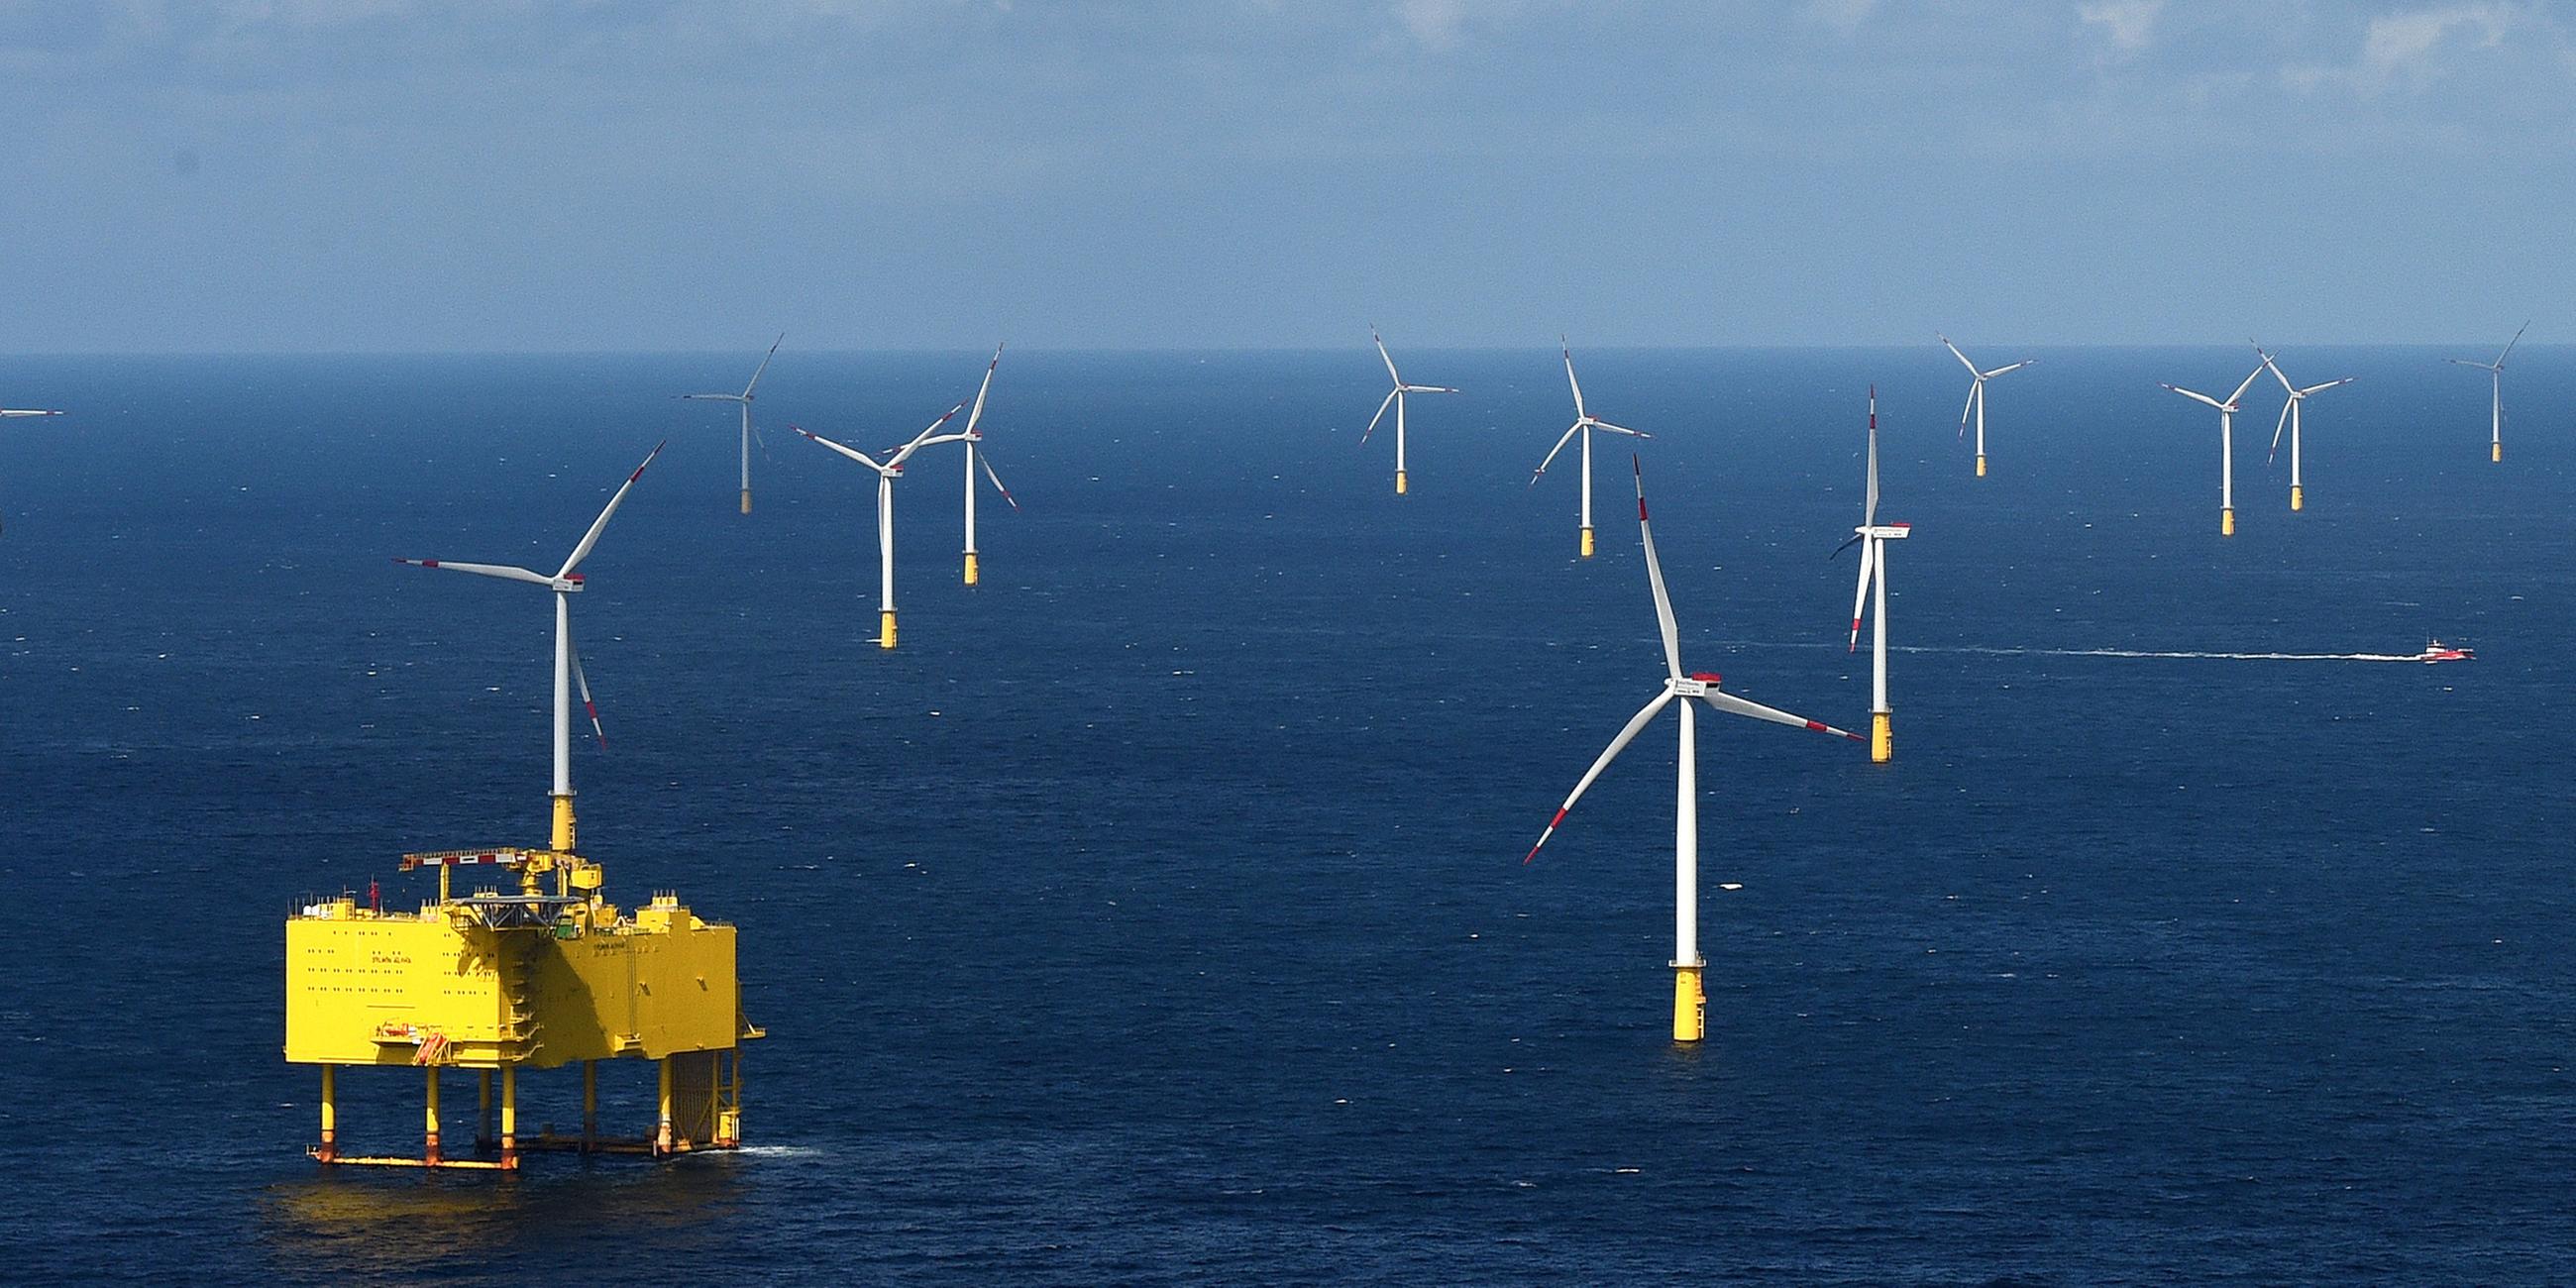 Archiv: Der Offshore Windpark "DanTysk" westlich der Insel Sylt am 27.04.2015.